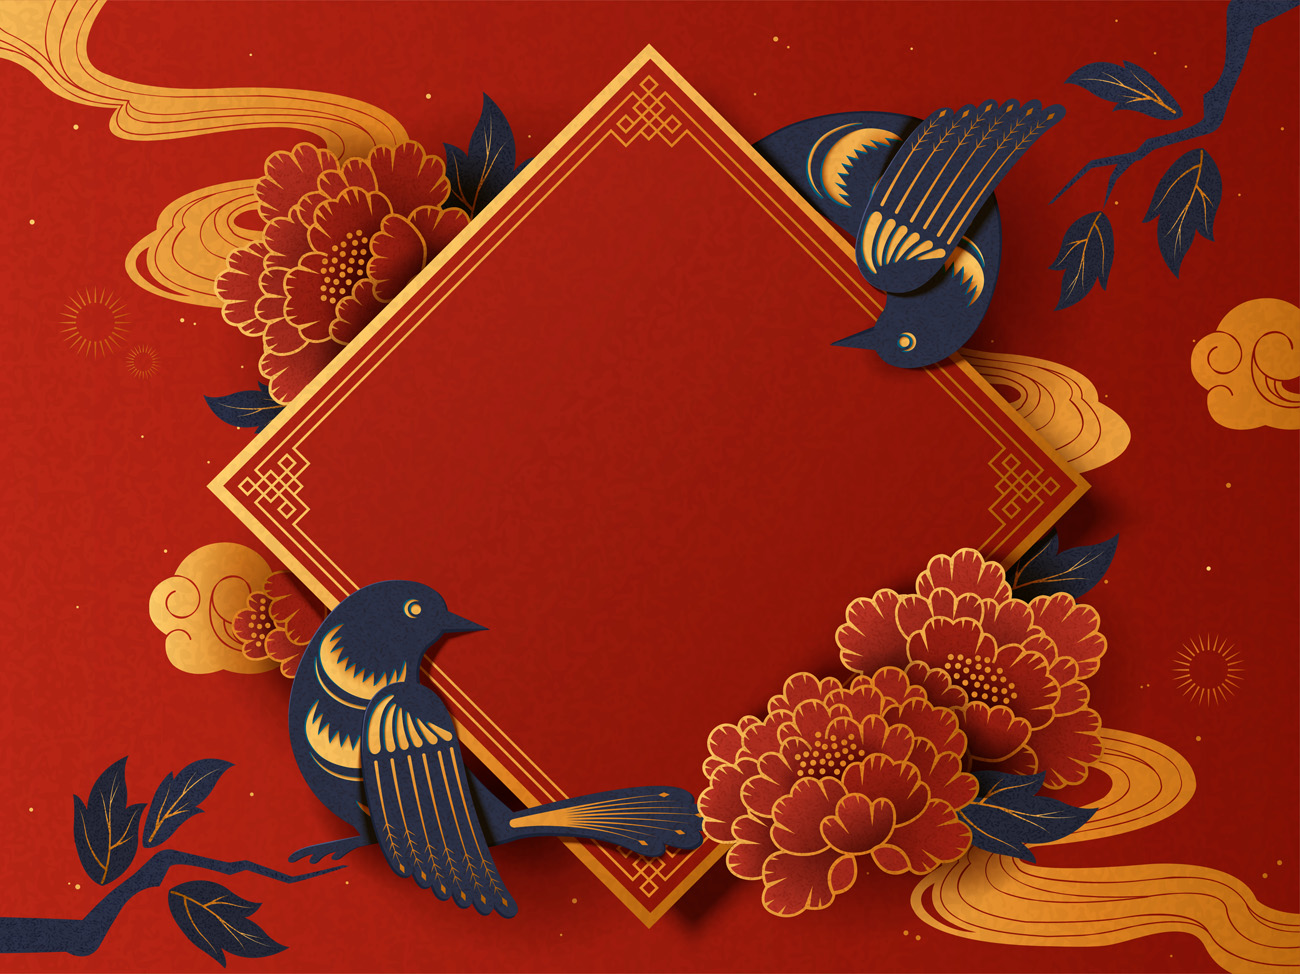 剪纸风农历年传统空白春联与燕子红色背景中国风元素新年传统横幅